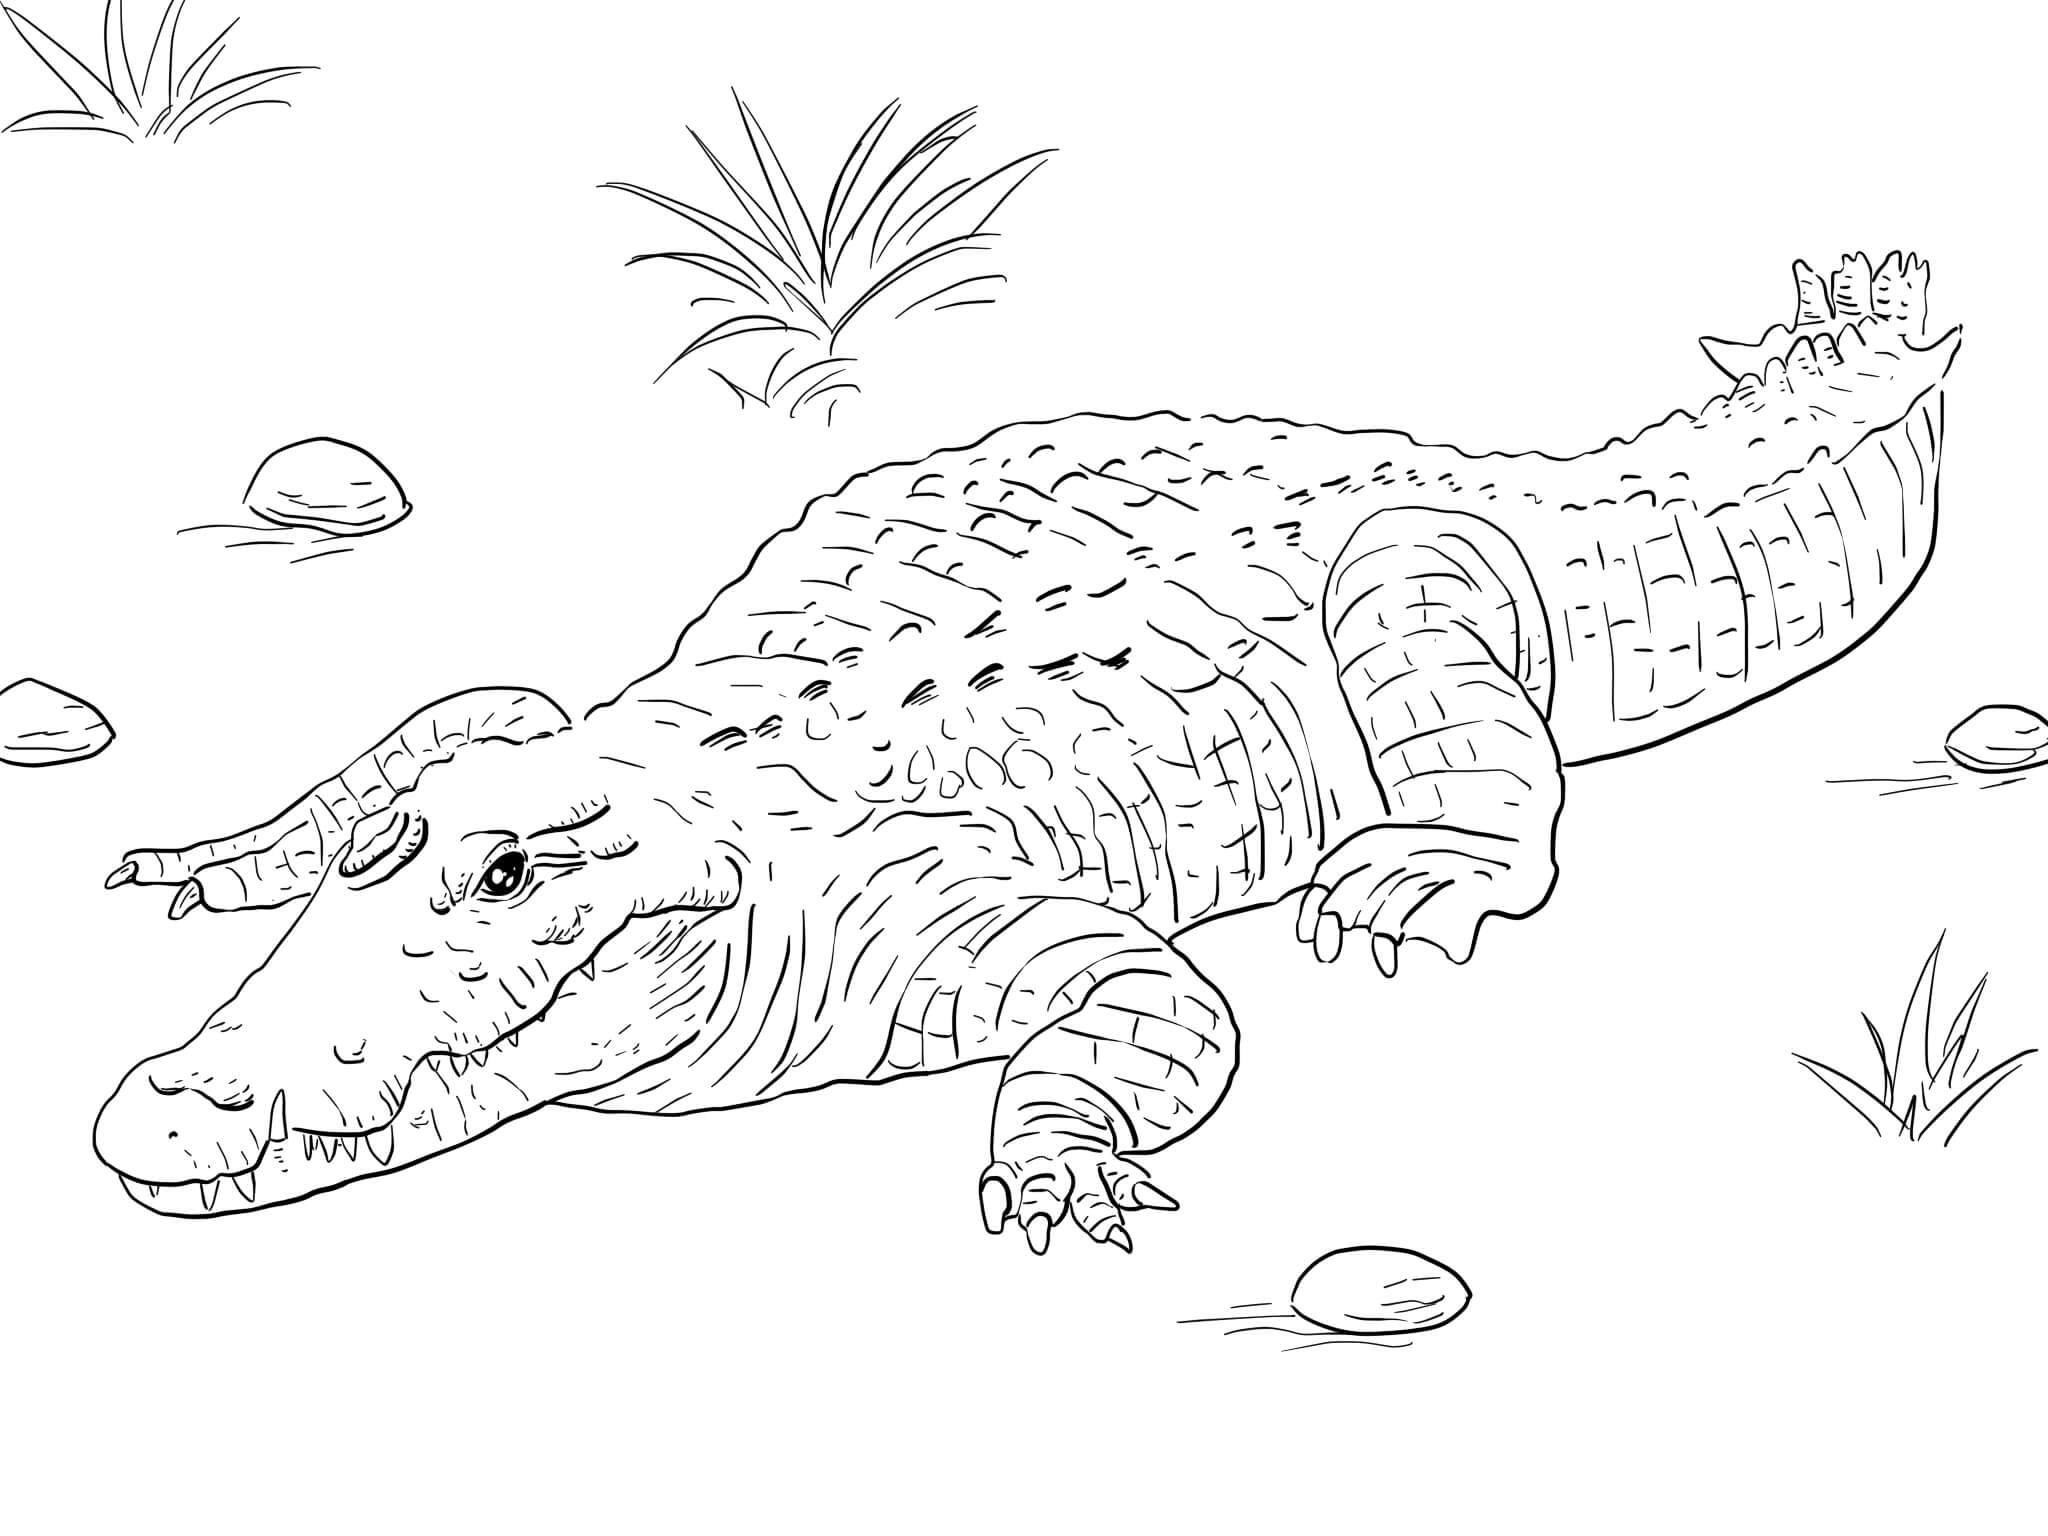 Vẽ con cá sấu như trong hình câu hỏi 3741606  hoidap247com